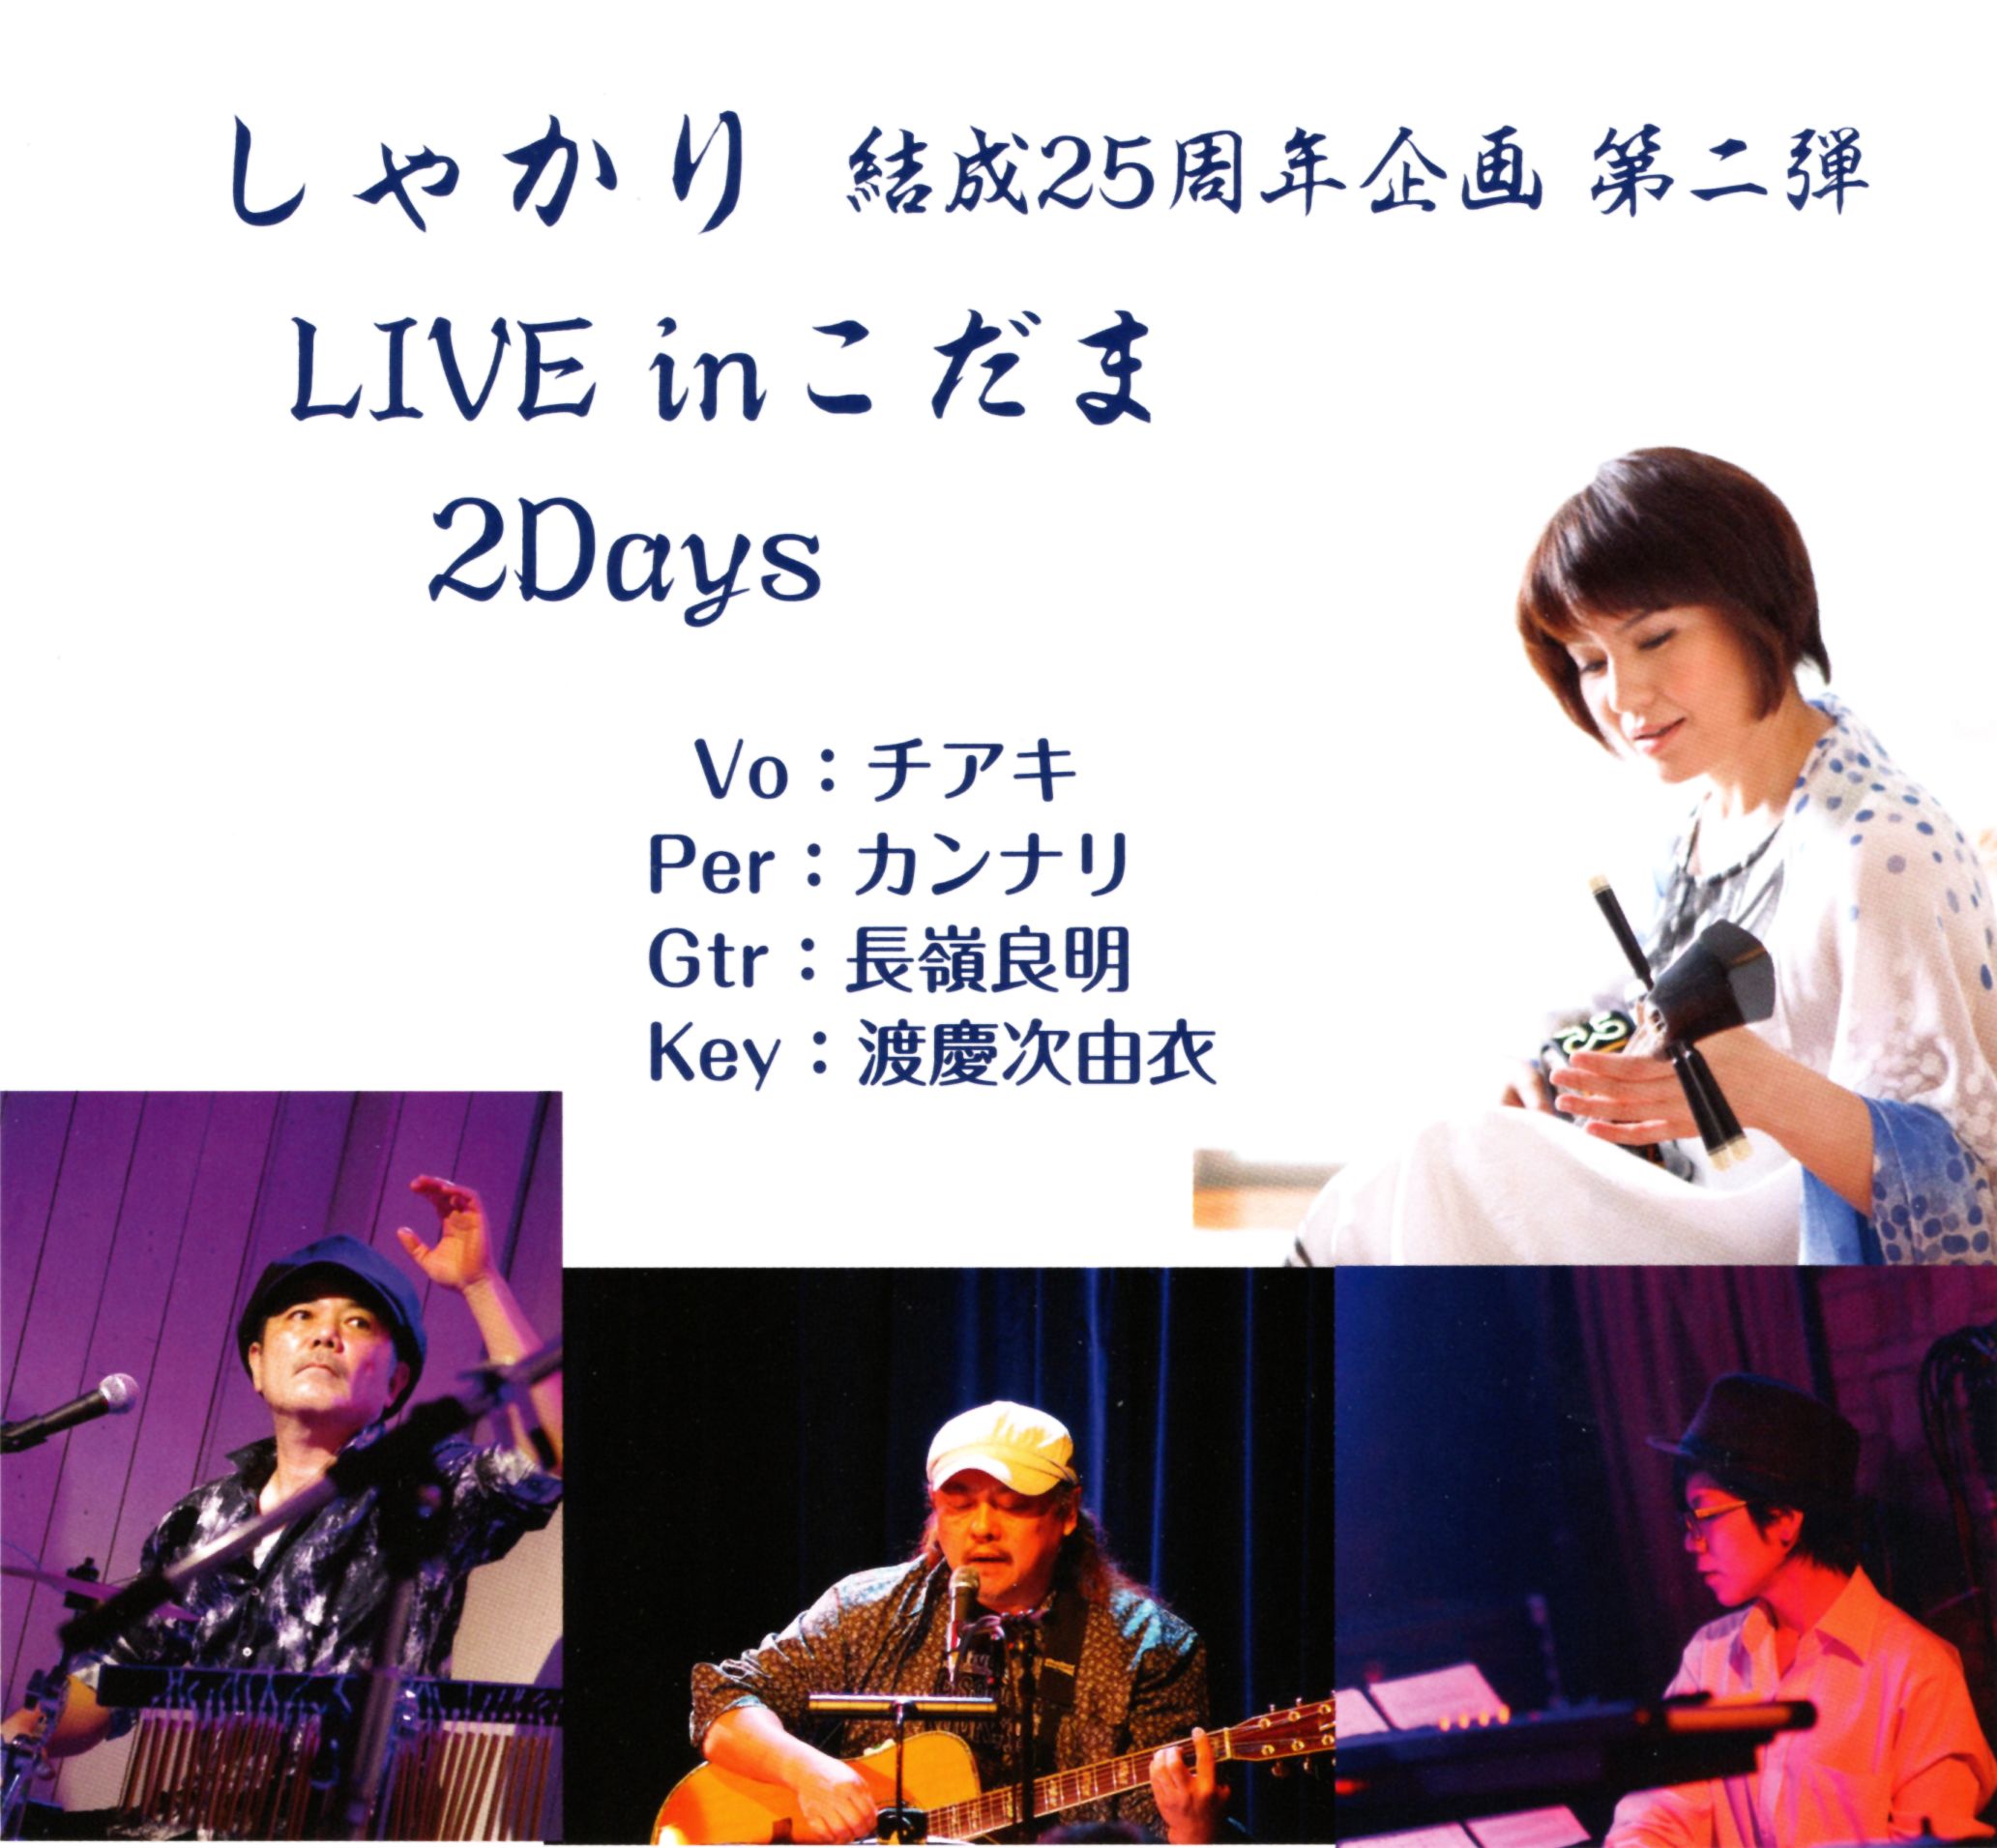 人気沖縄ポップスユニット・しゃかりが東京で結成25周年企画ライブ第2弾を2days開催